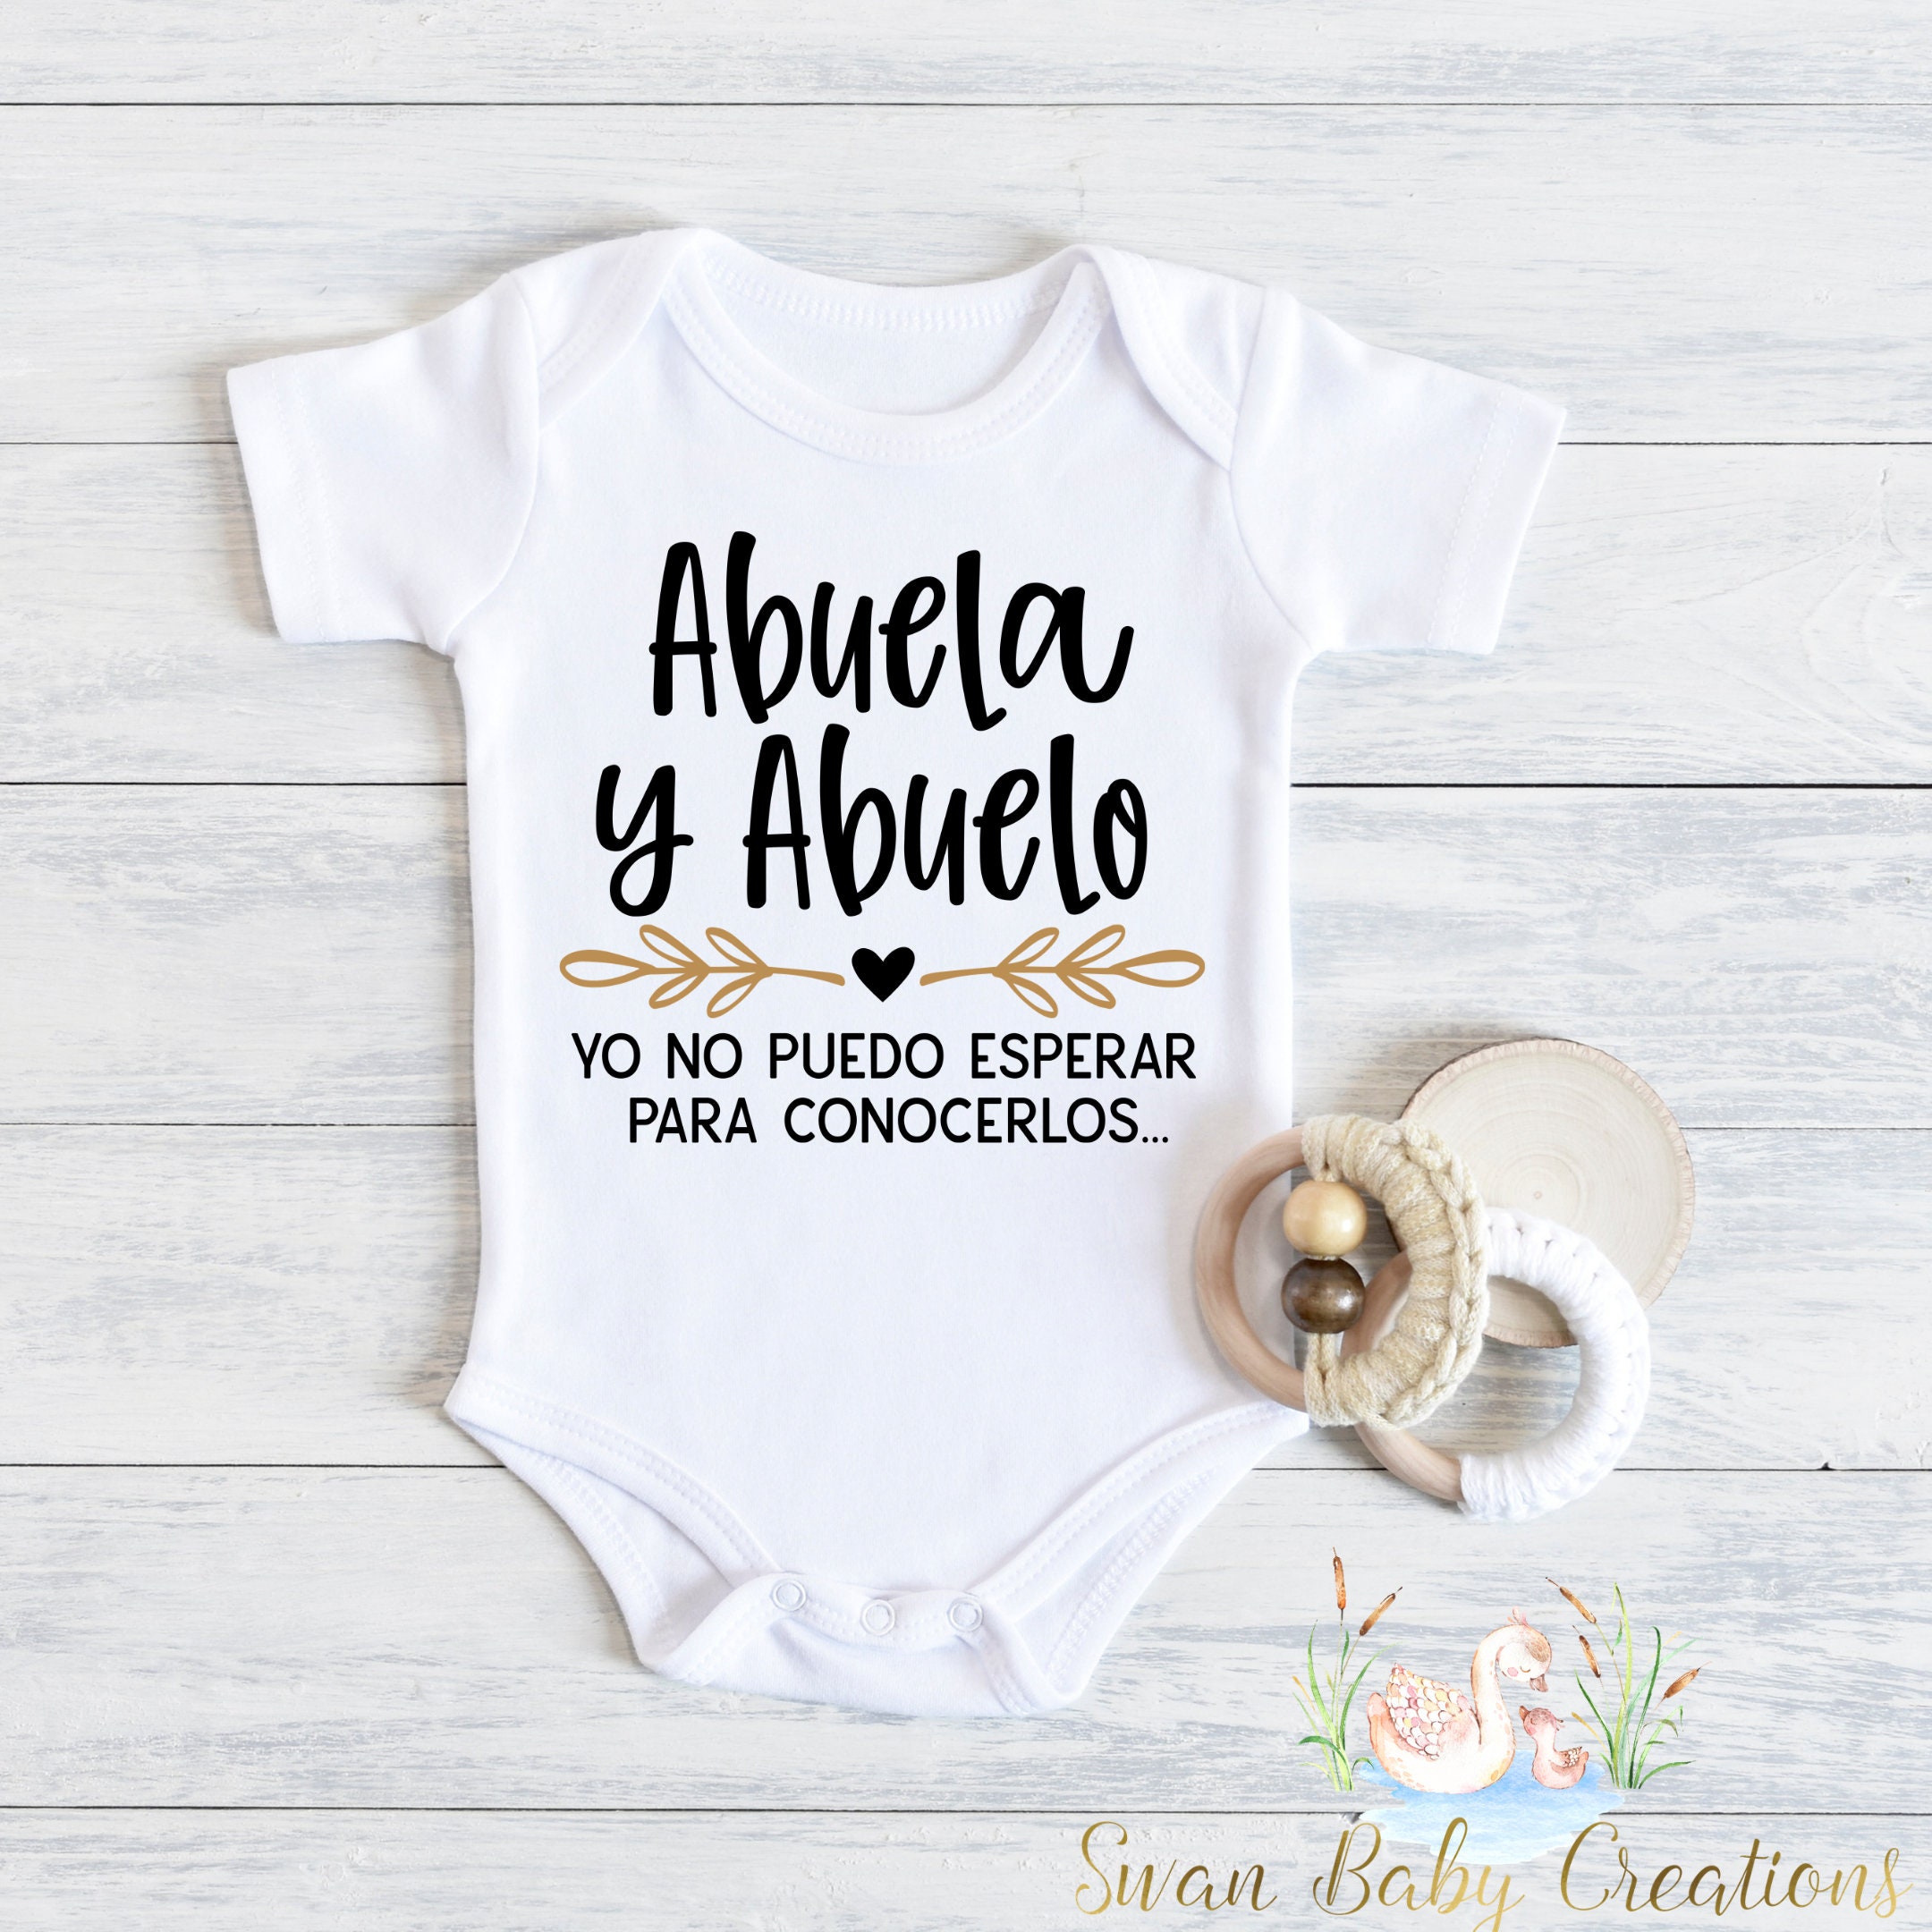 Tia Pregnancy Announcement / Hola Tia Baby Reveal / Spanish Pregnancy  Reveal / Auntie Baby Announcement Gift Box / Anuncio De Embarazo 